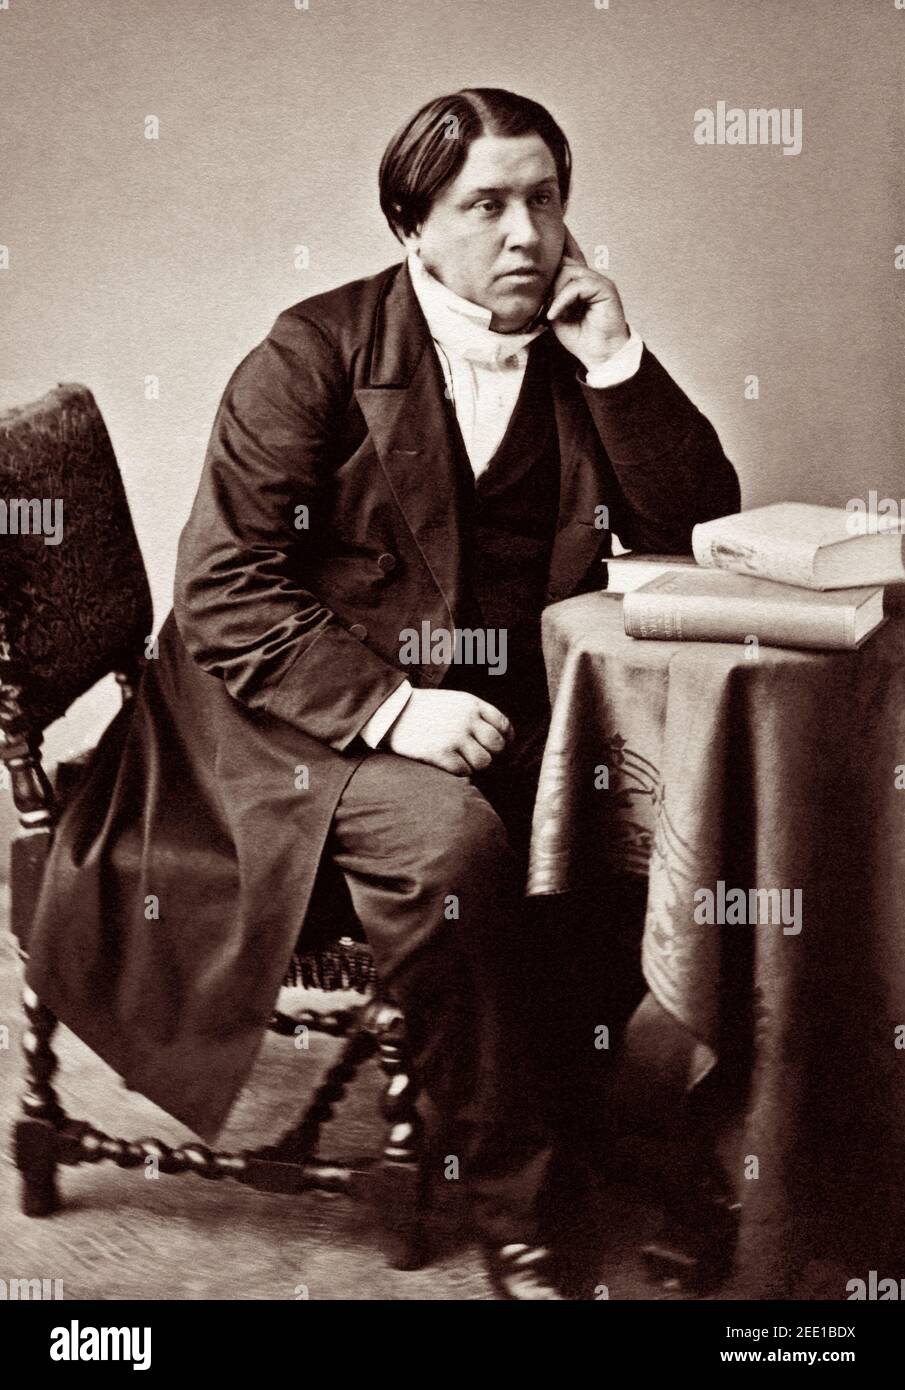 Charles Haddon (H. C.) Spurgeon (1834–1892), un ministro Battista e parroco popolare e influente del Tabernacolo Metropolitano di Londra, conosciuto come il "Principe dei Predicatori", mostra nei suoi anni più giovani, intorno al 1860. Foto Stock